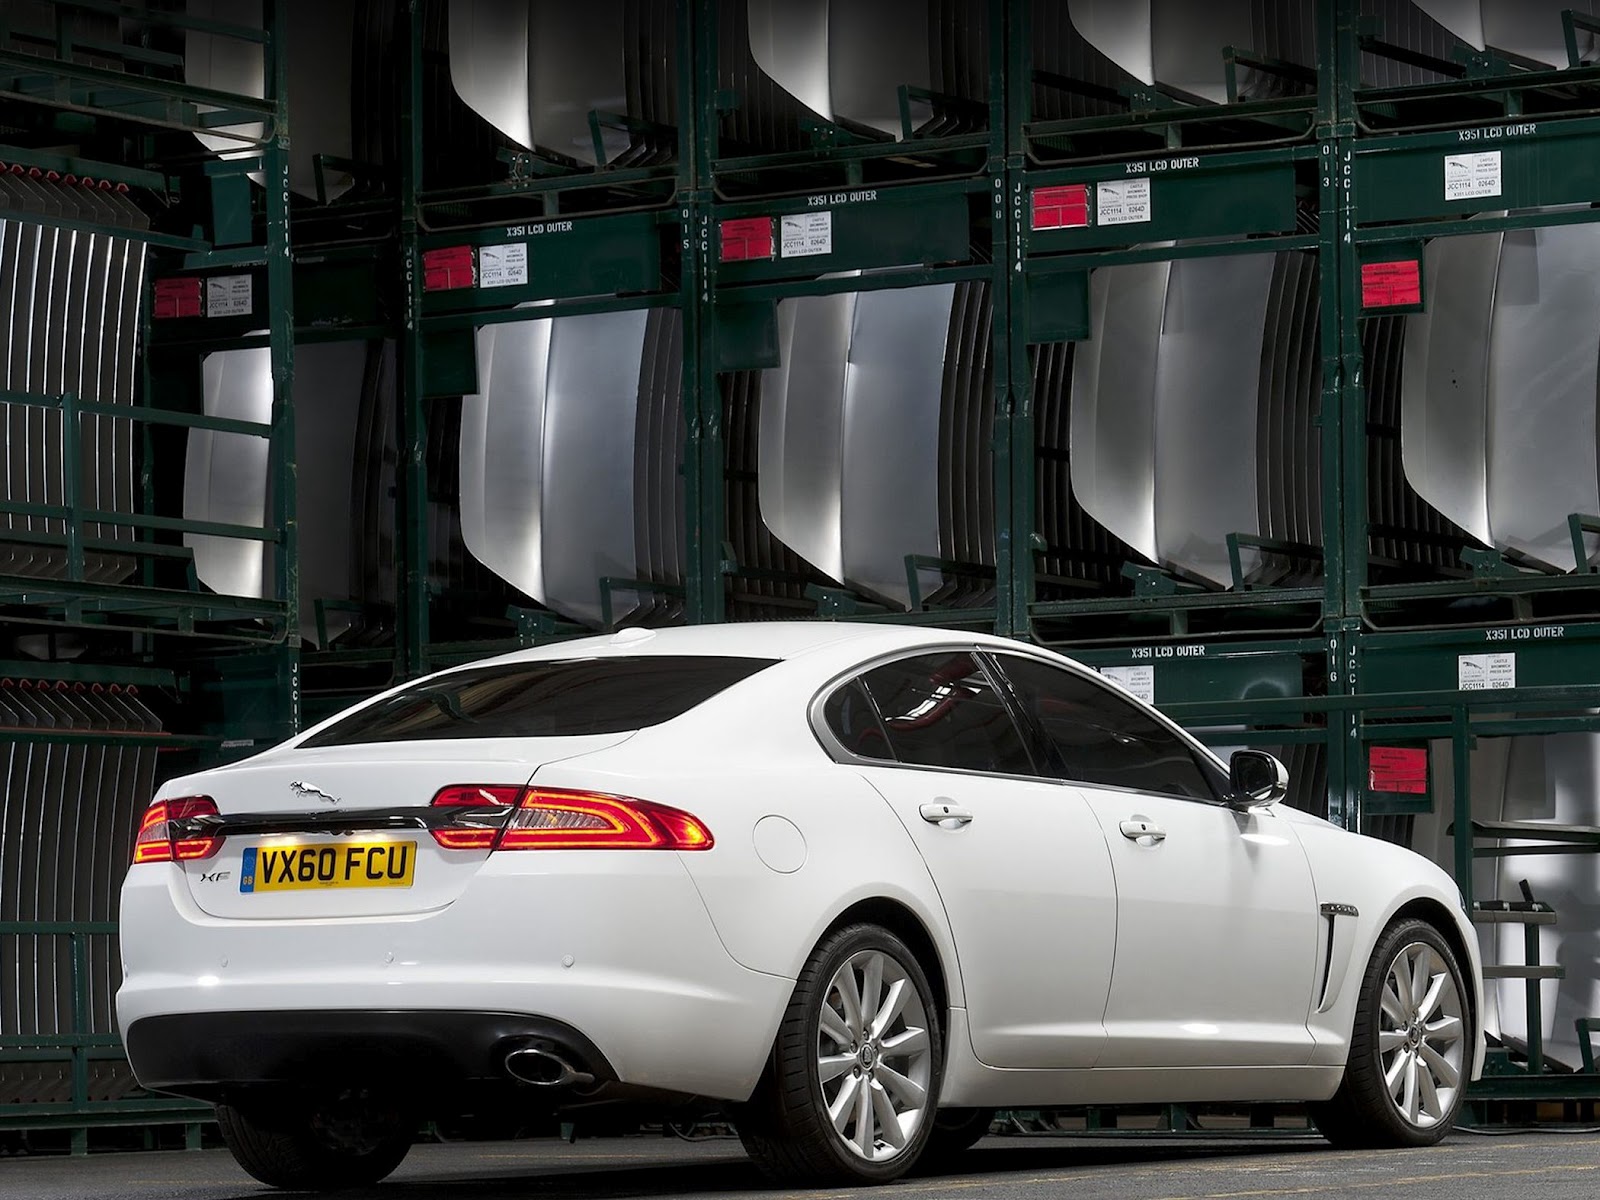 2012 Jaguar XF Supercharged Interior, Exterior Reviews